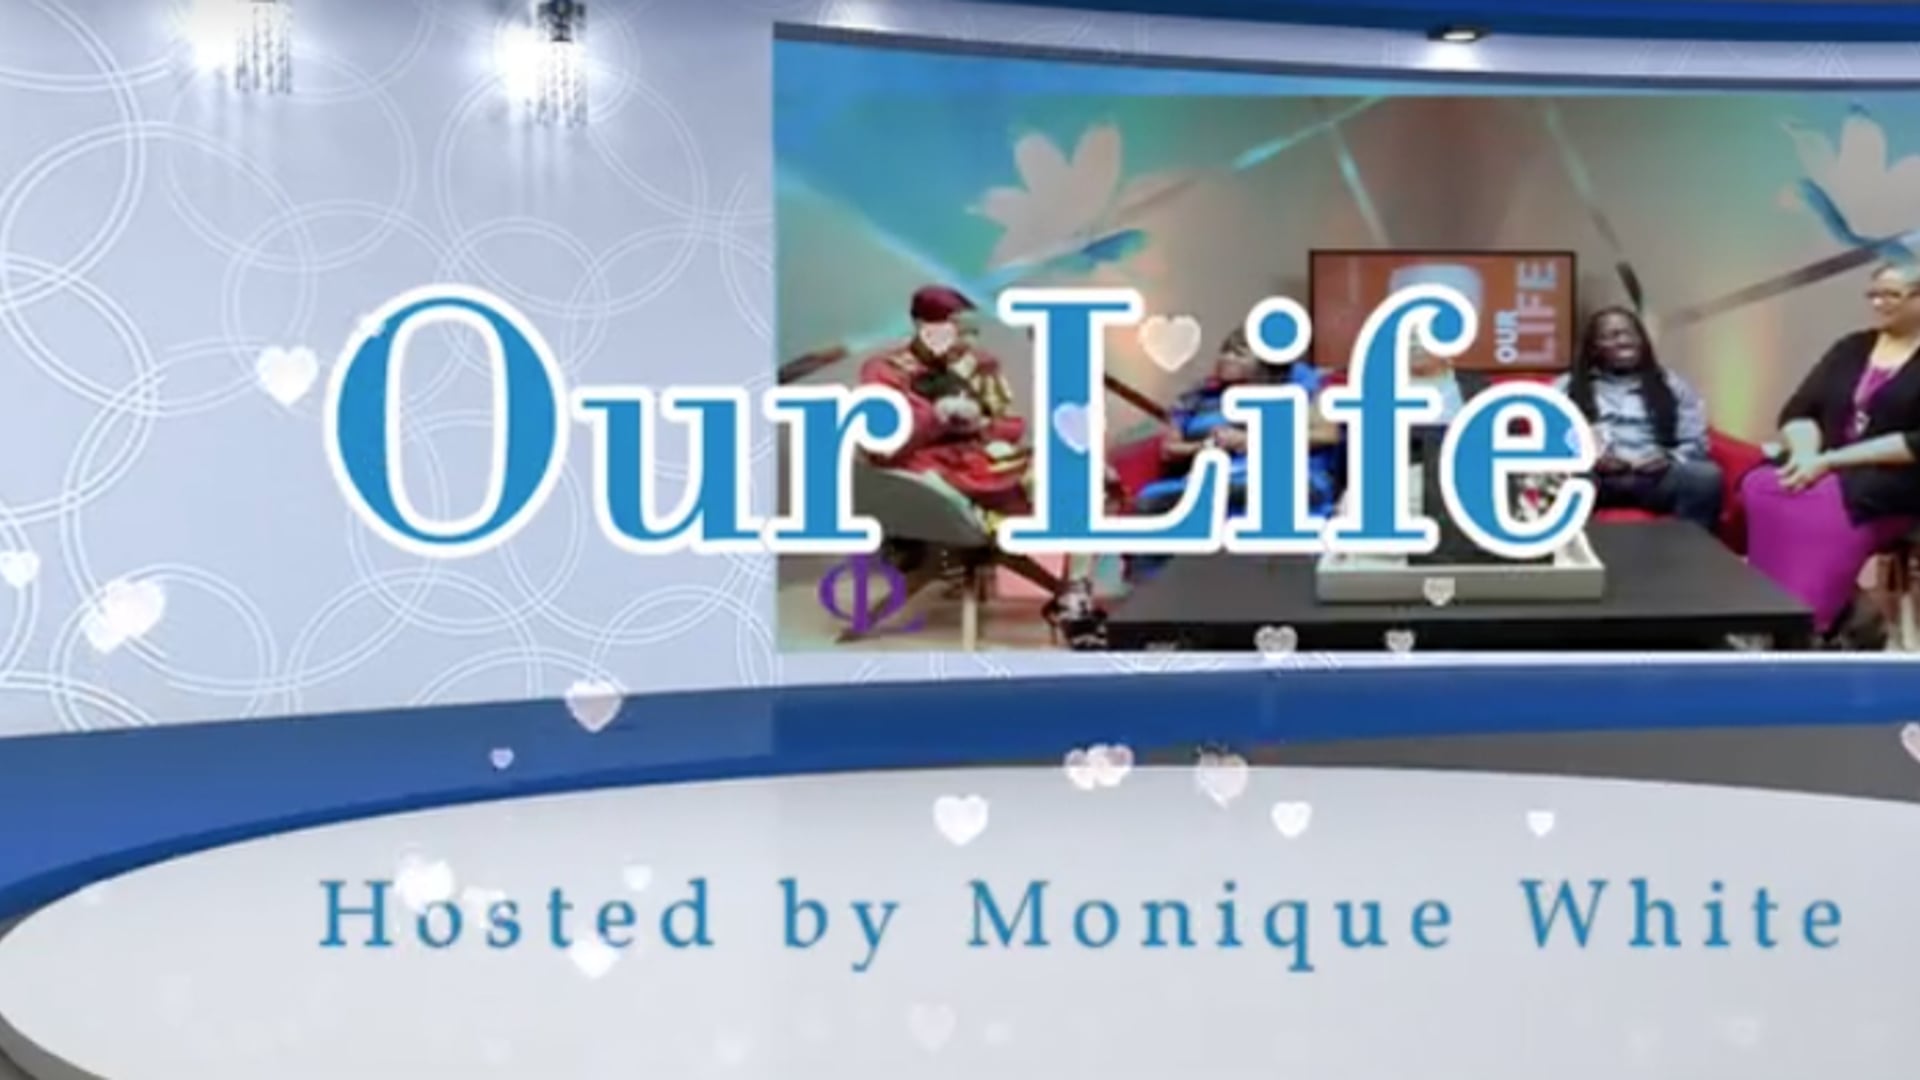 Our Life TV Show S2 E20